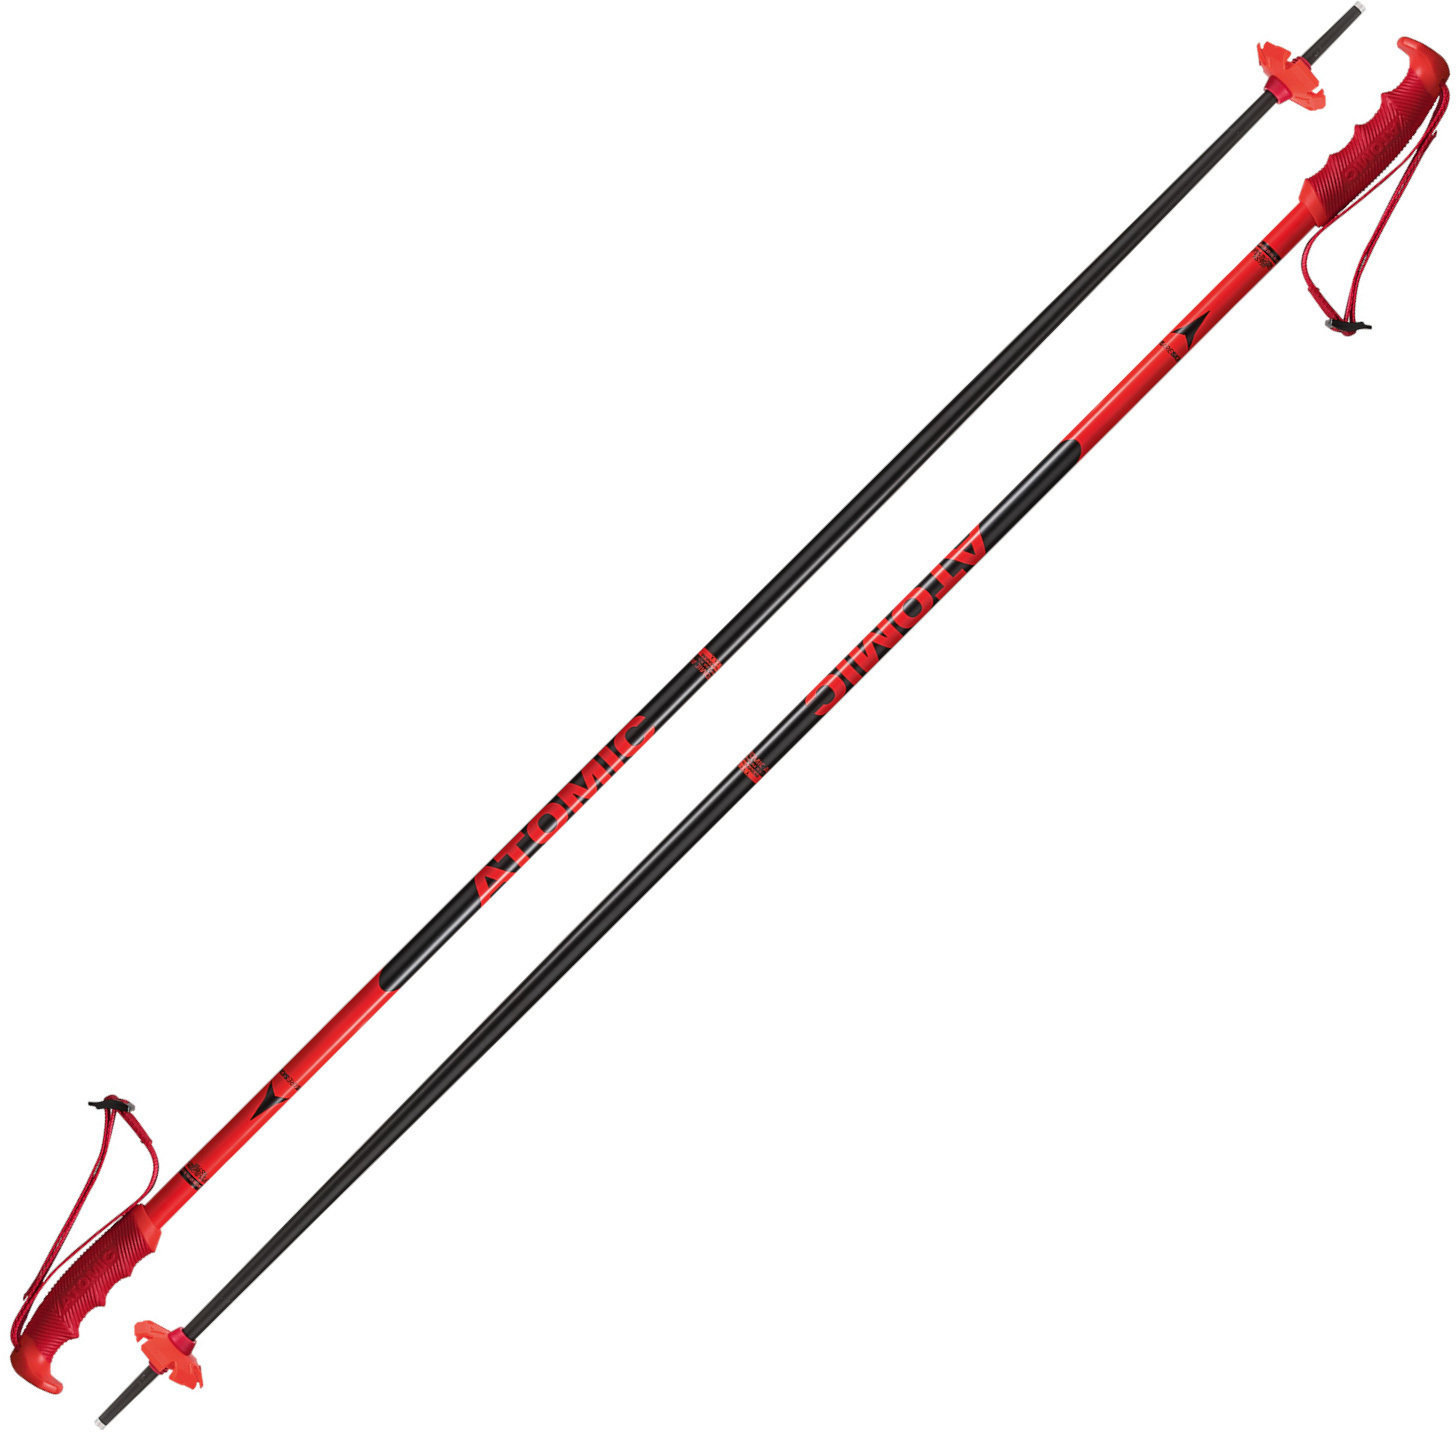 Ski-stokken Atomic Redster Red/Black 125 cm Ski-stokken